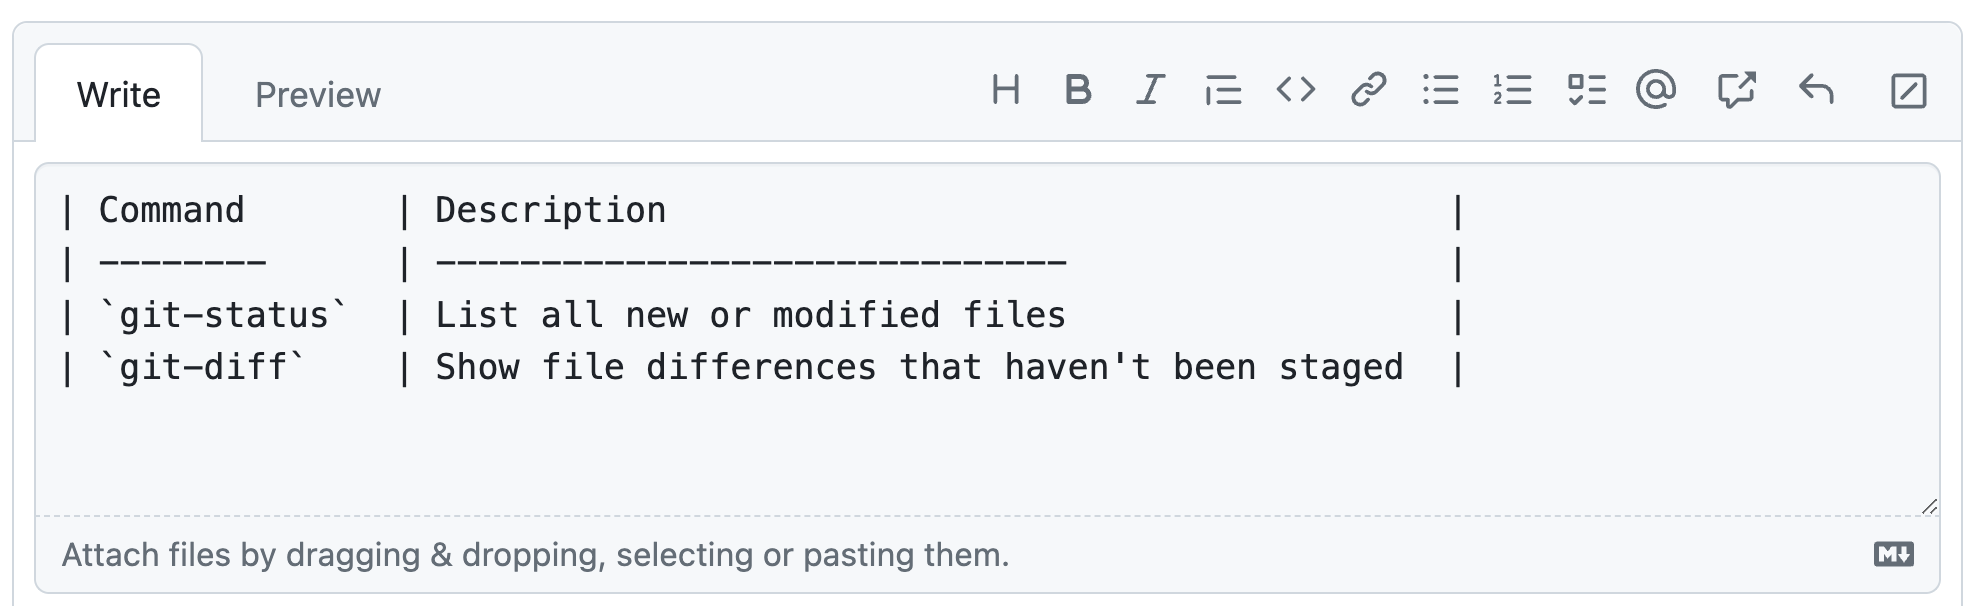 Capture d’écran d’un commentaire GitHub montrant un exemple de table Markdown répertoriant deux commandes Git. Toutes les lettres du tableau ont la même largeur visuelle.